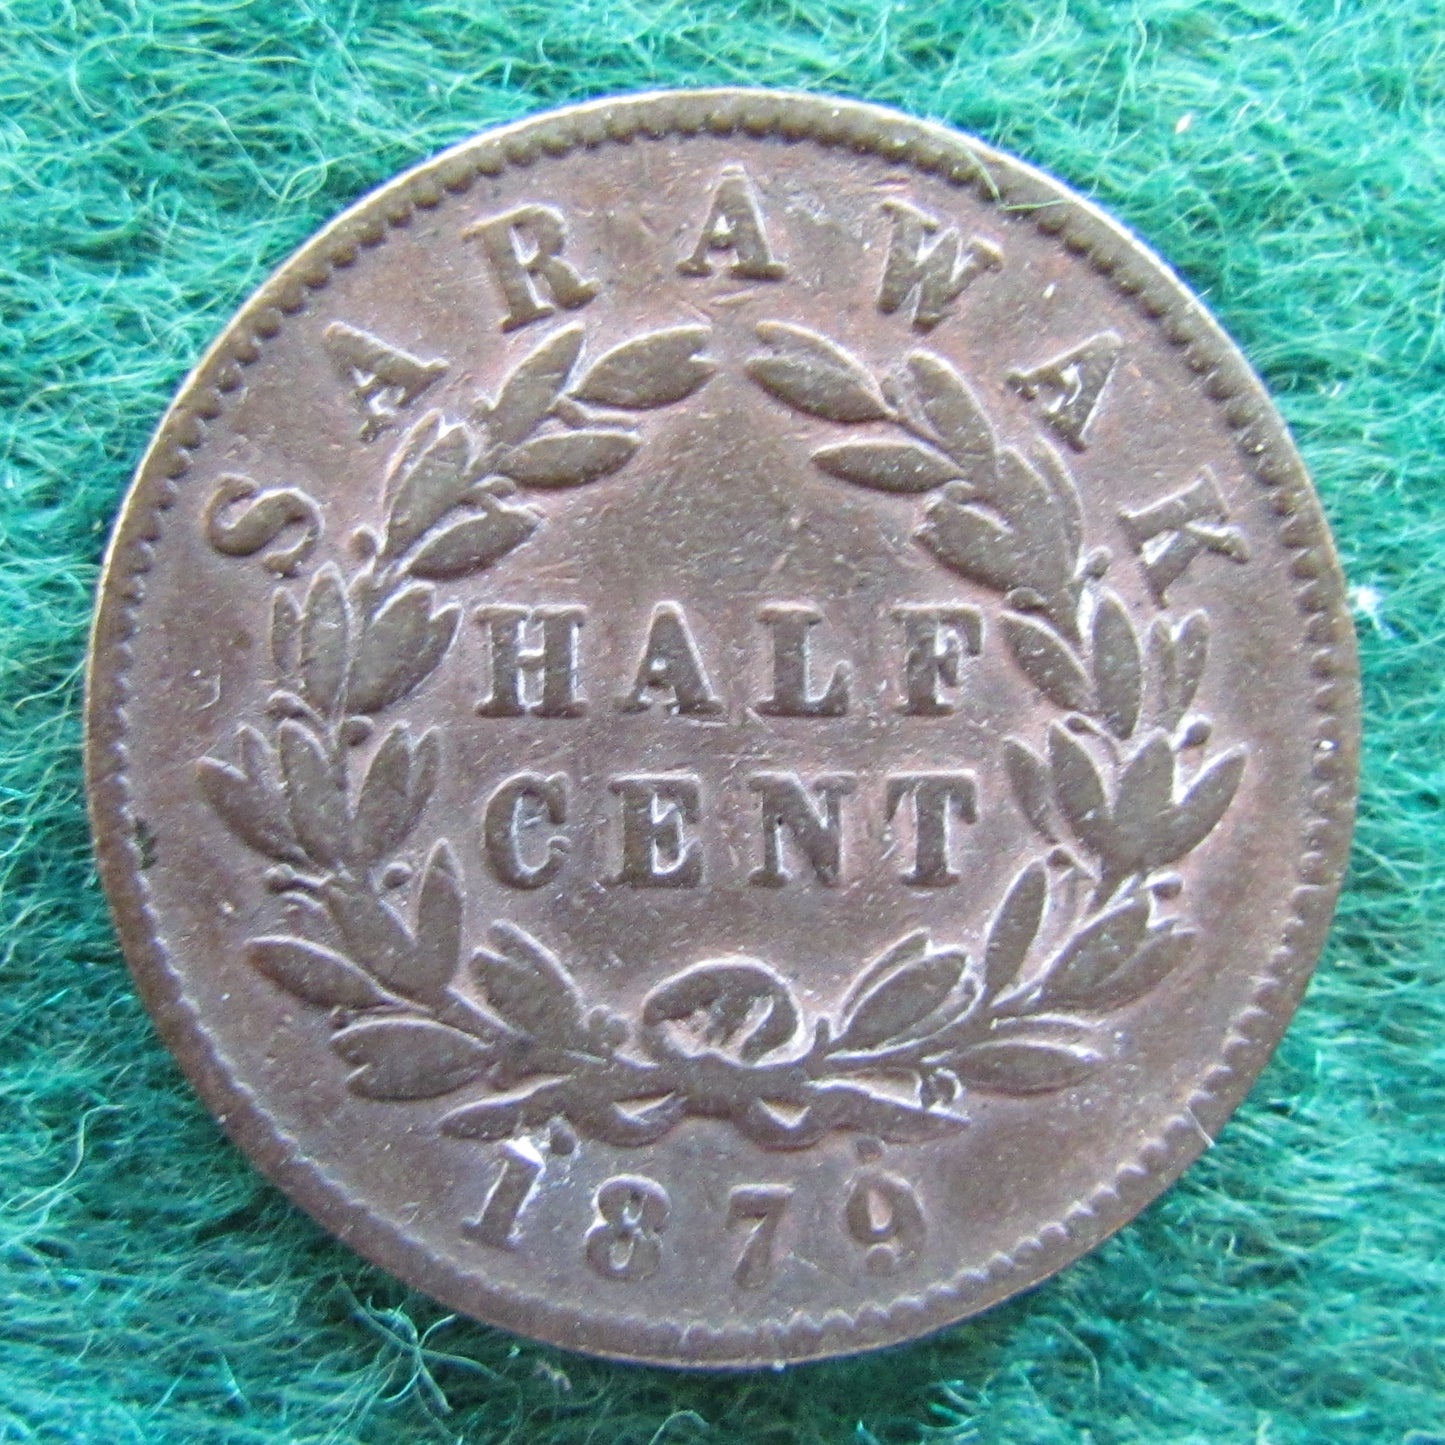 Sarawak 1879 Half Cent Coin C B Brooke Rajah